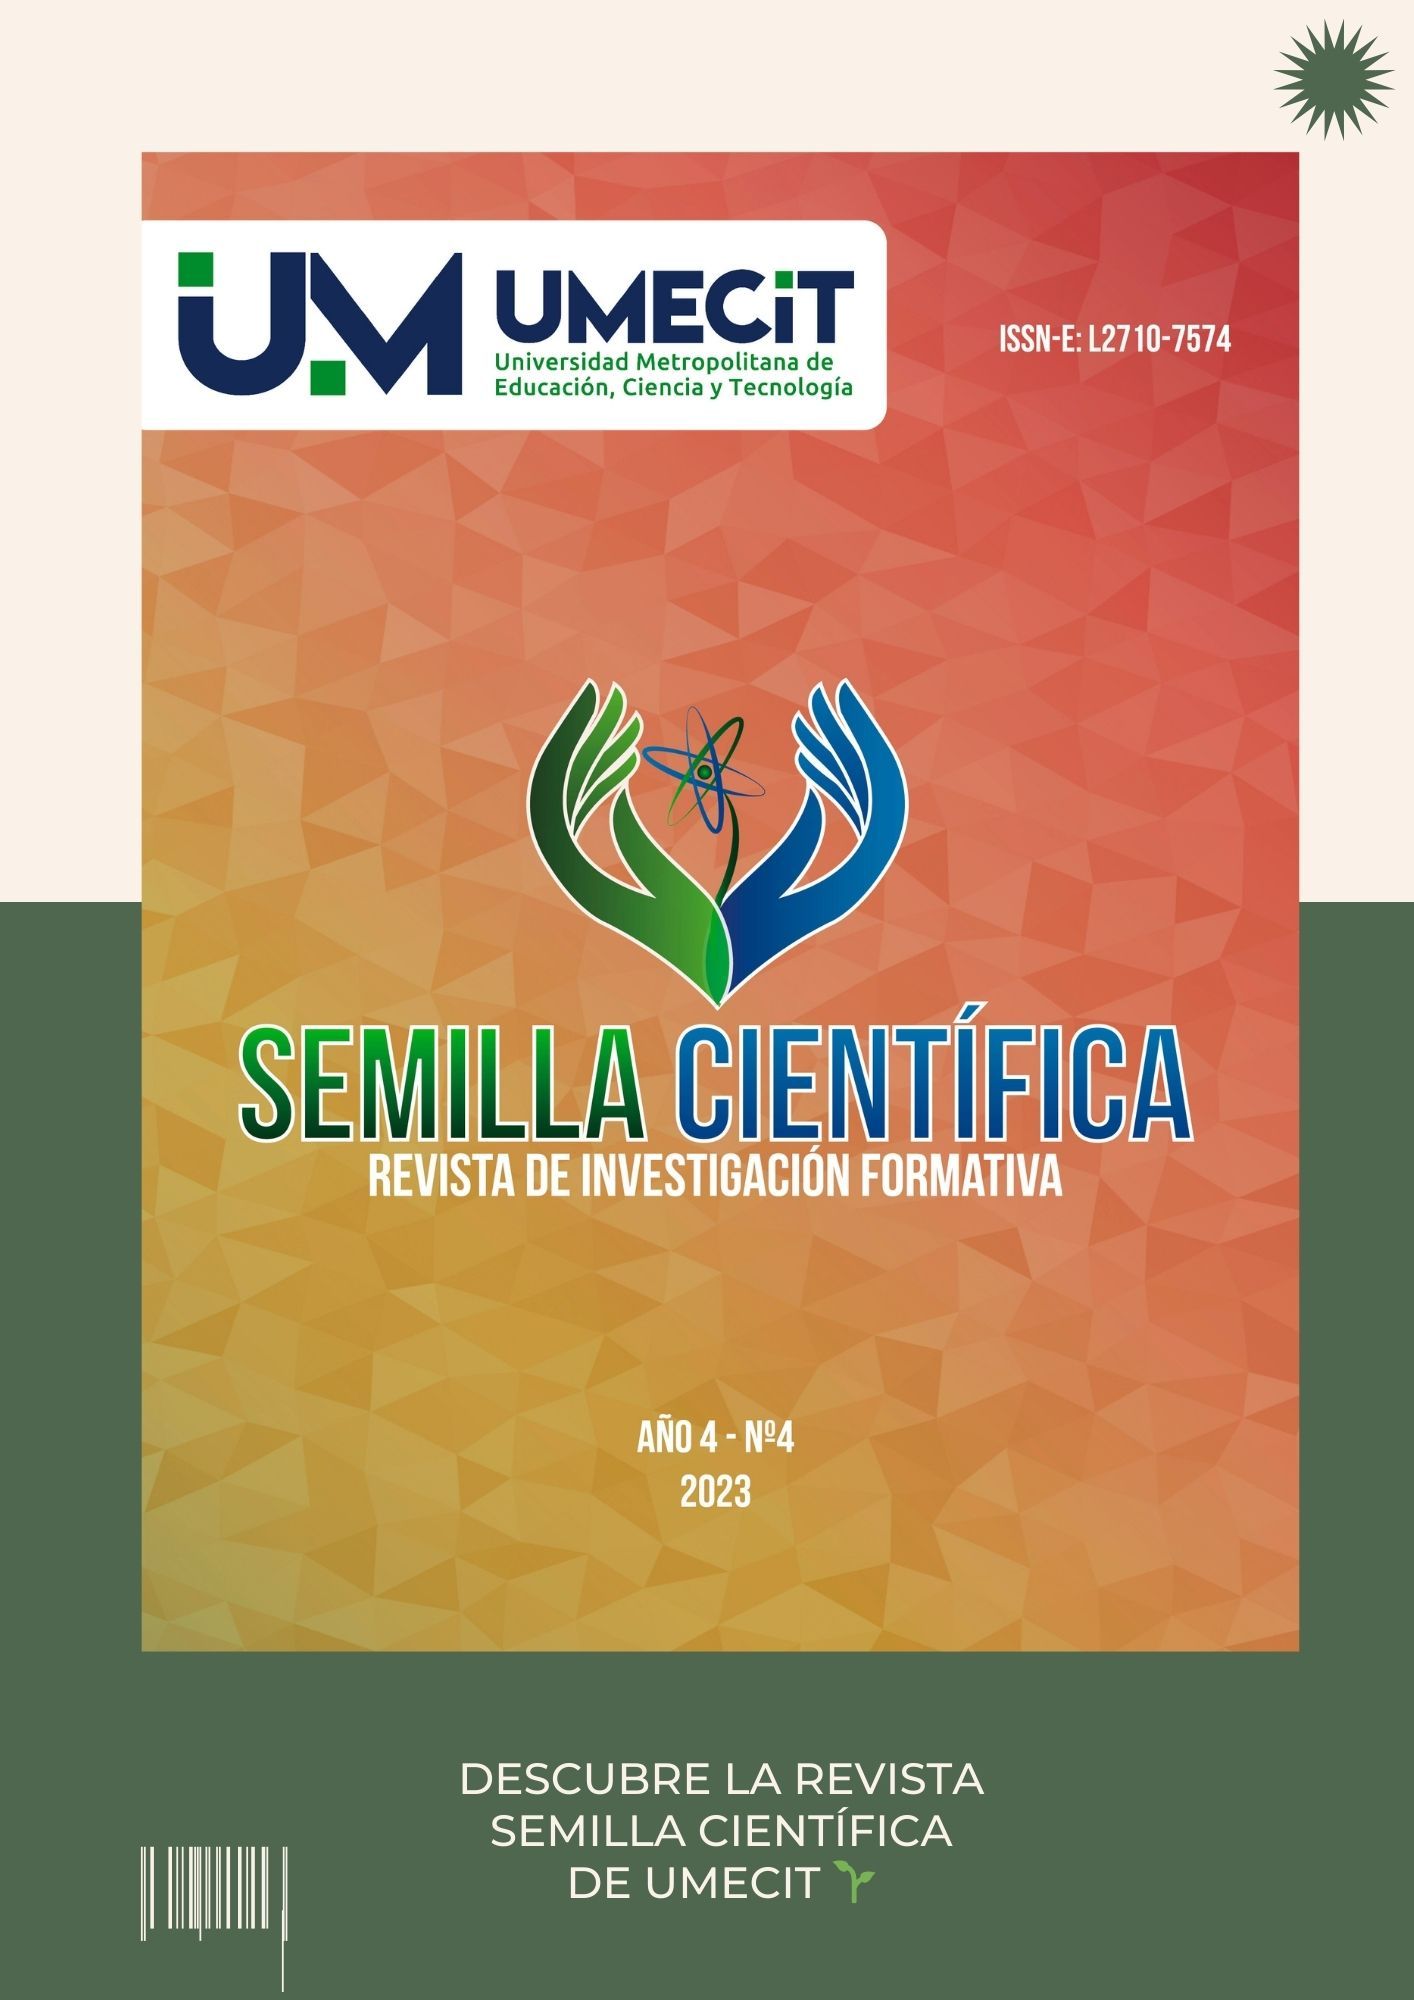 Descubriendo la excelencia académica a través de la investigación: Revista Semilla Científica de UMECIT